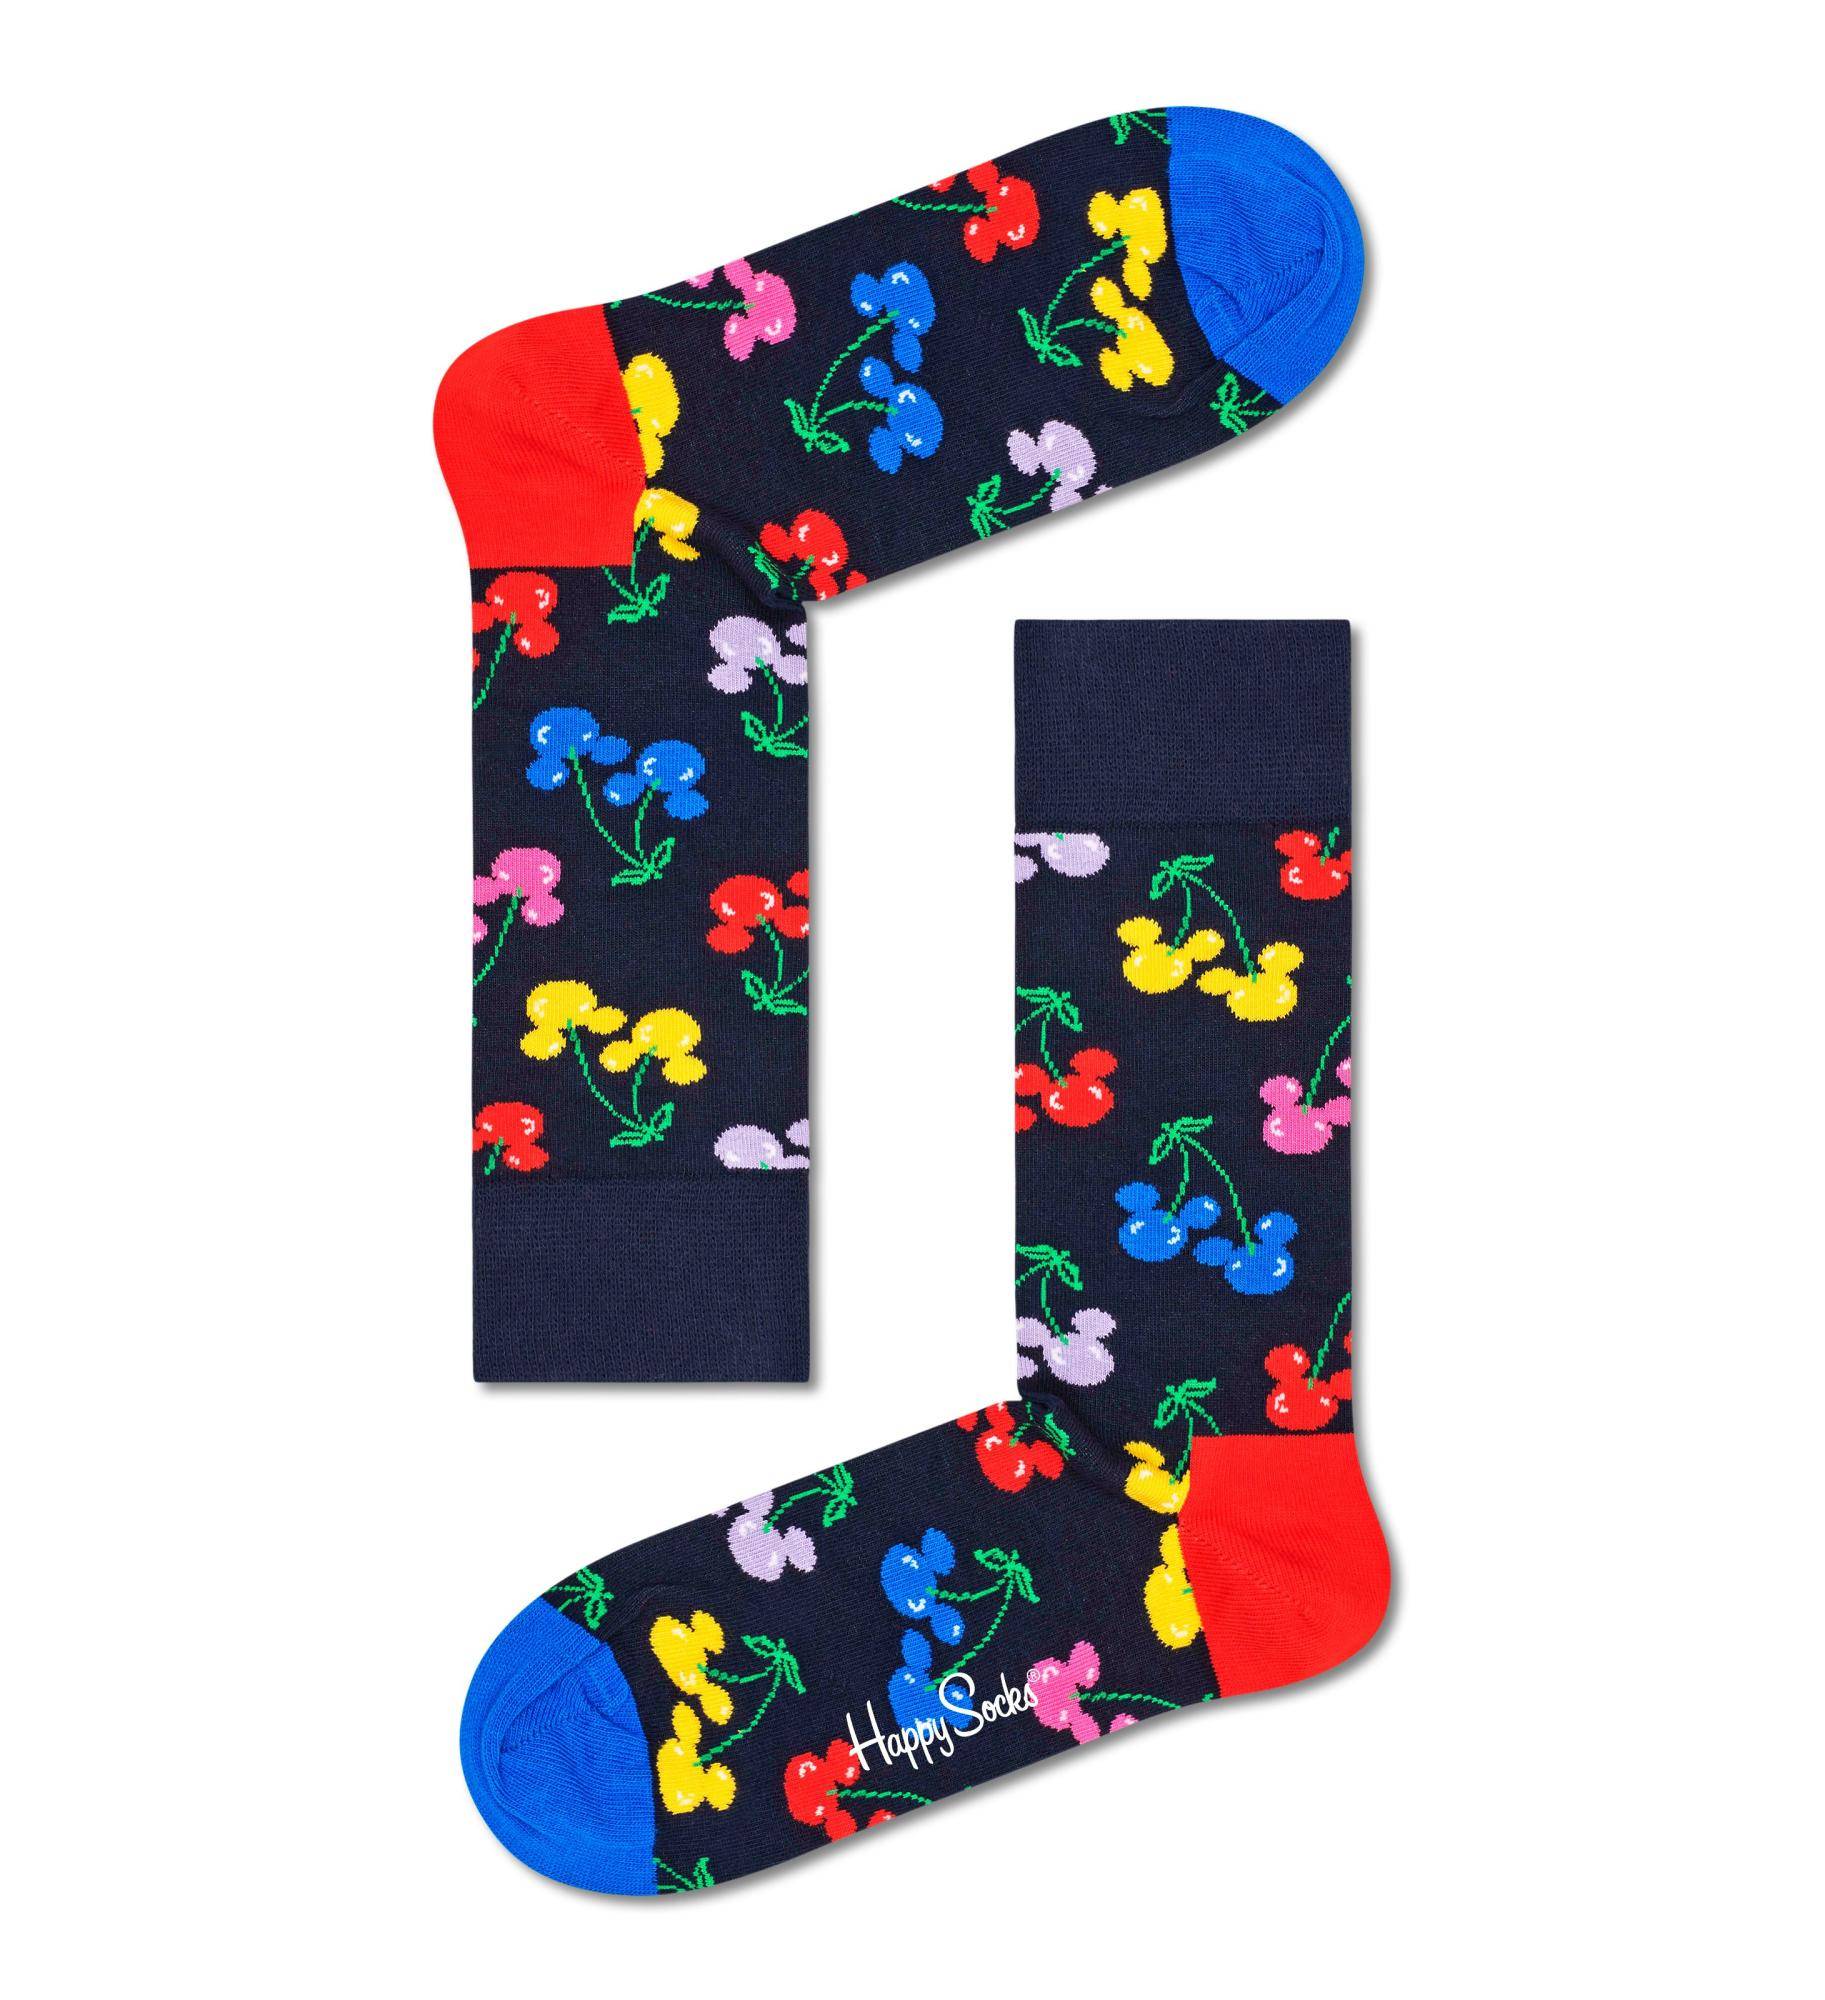 Носки Happy socks Disney Sock DNY01 6500, размер 29